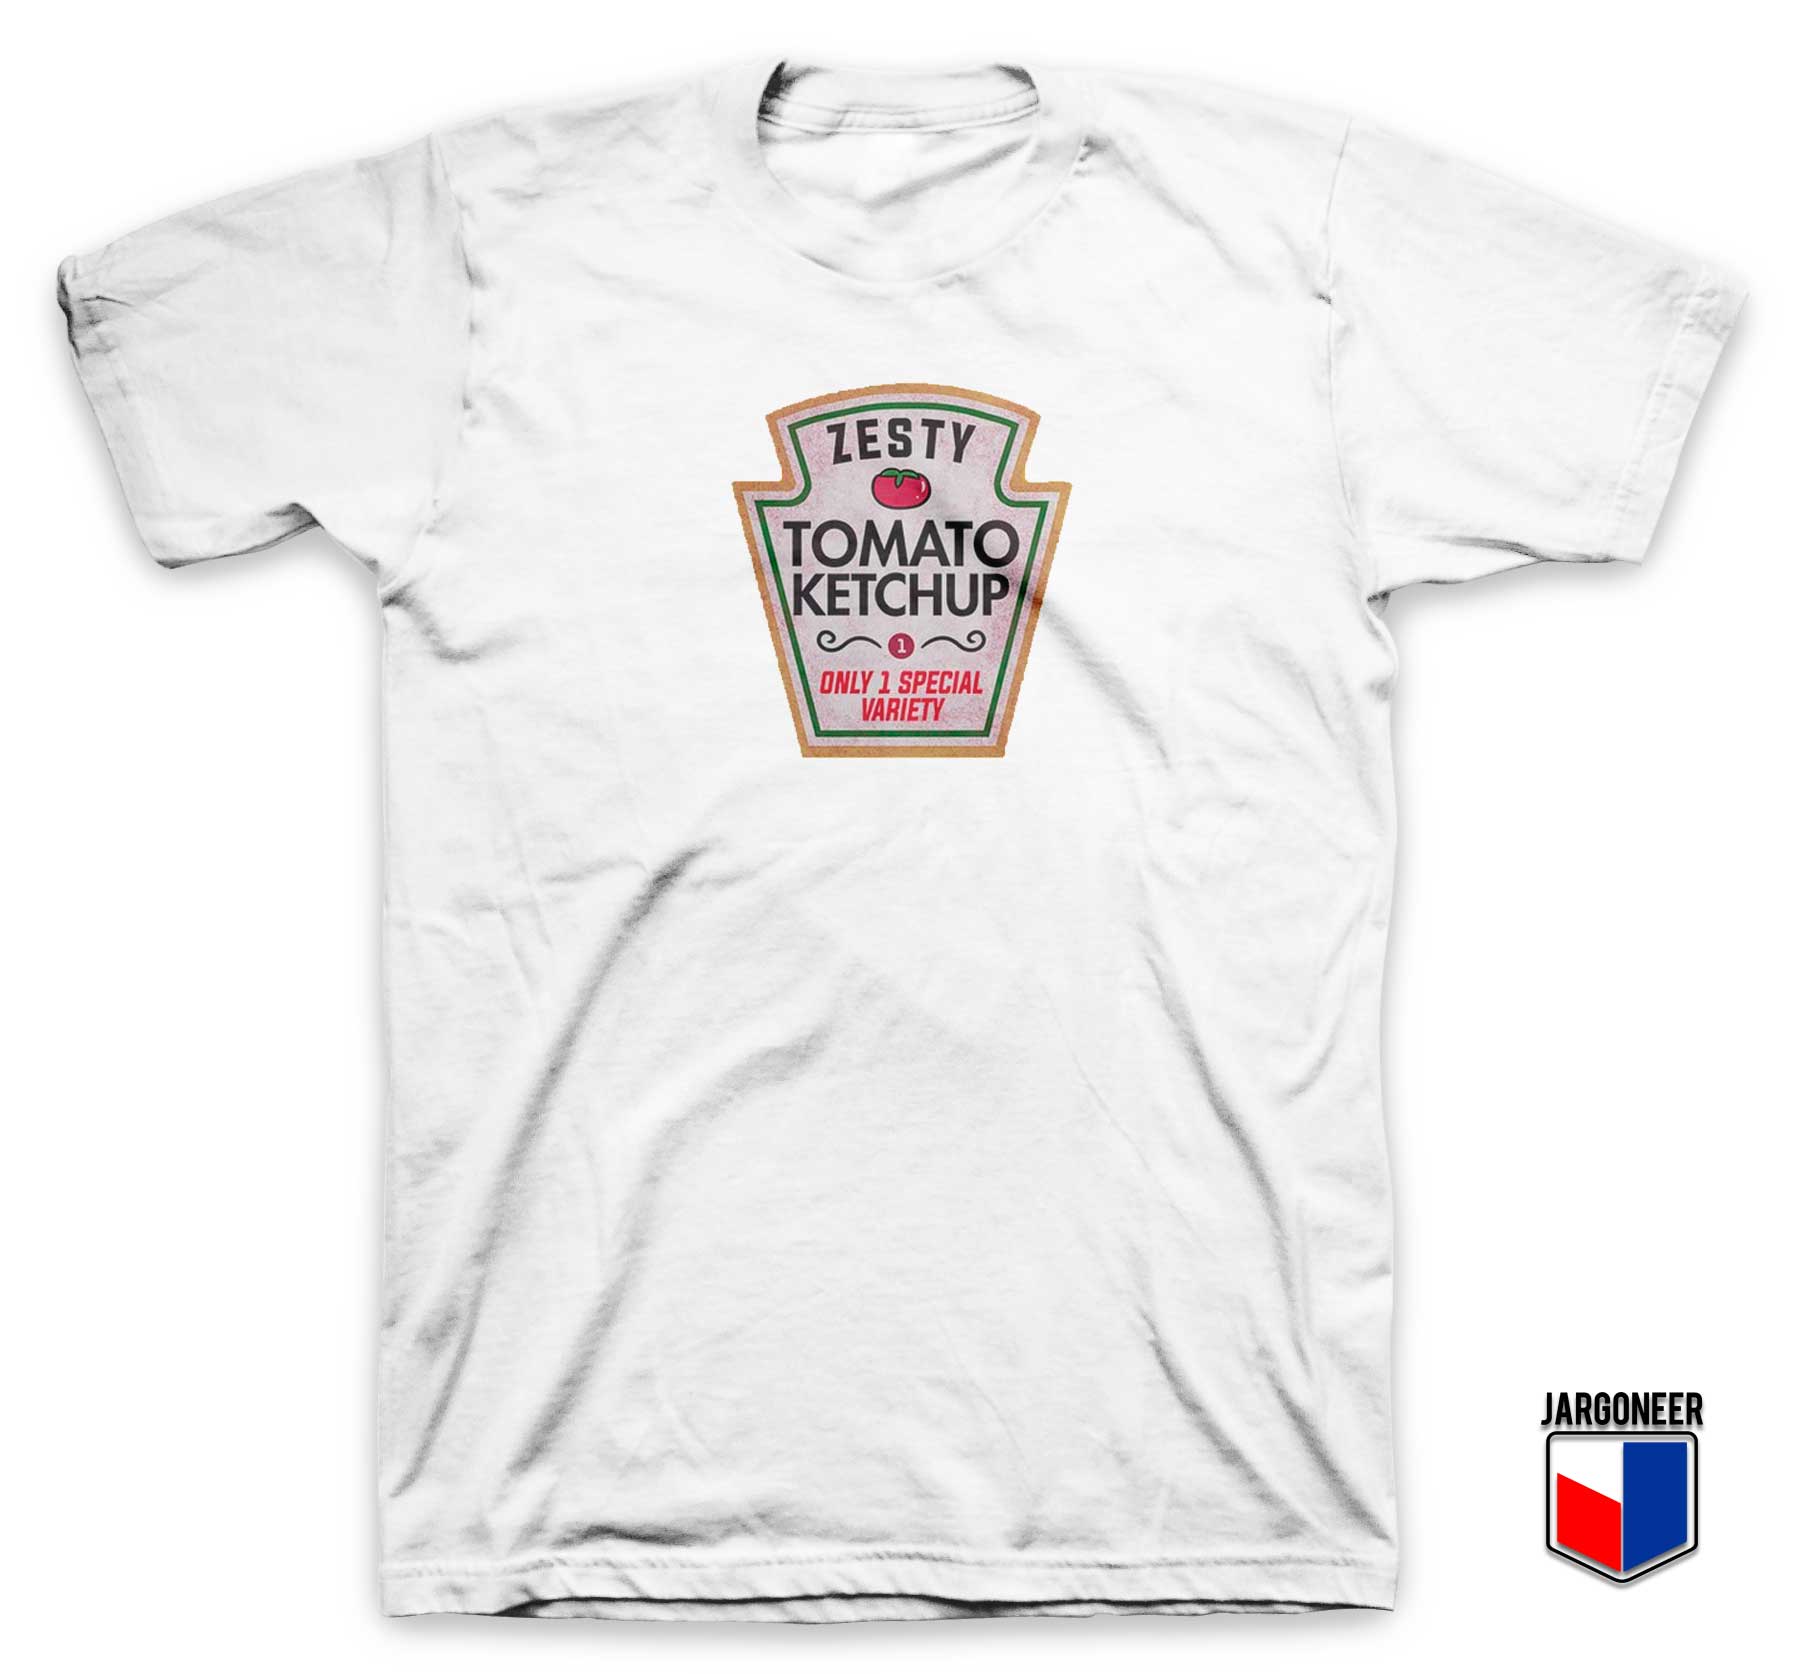 Zesty Tomato Ketchup T Shirt - Shop Unique Graphic Cool Shirt Designs